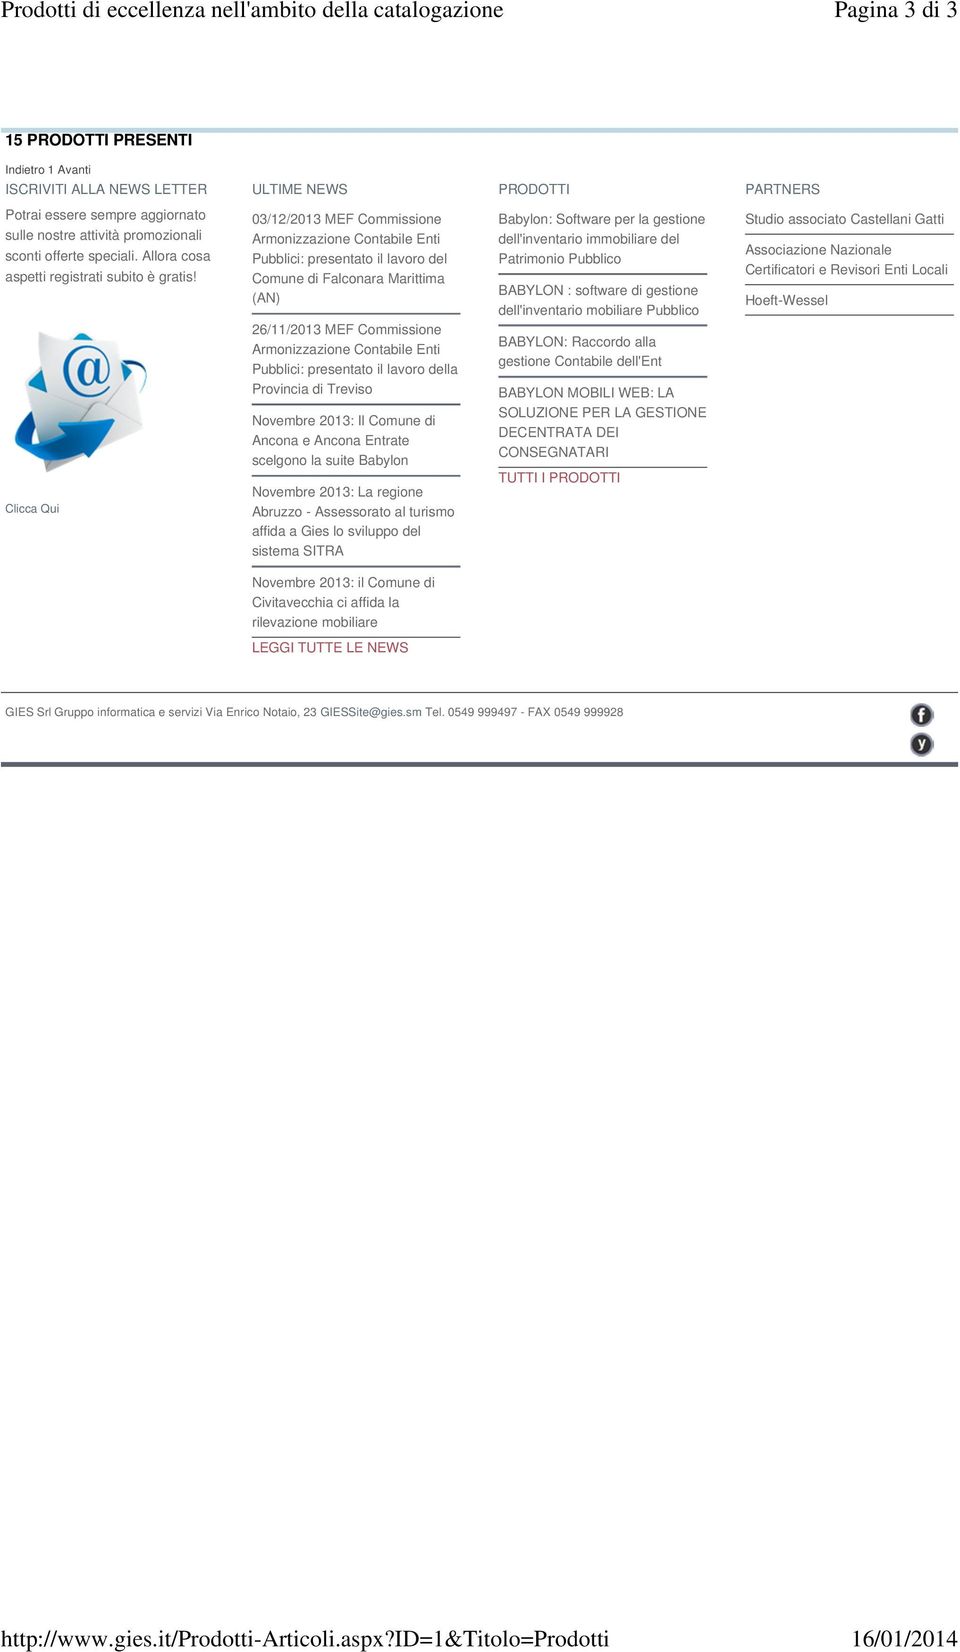 Clicca Qui 03/12/2013 MEF Commissione Pubblici: presentato il lavoro del Comune di Falconara Marittima (AN) 26/11/2013 MEF Commissione Pubblici: presentato il lavoro della Provincia di Treviso